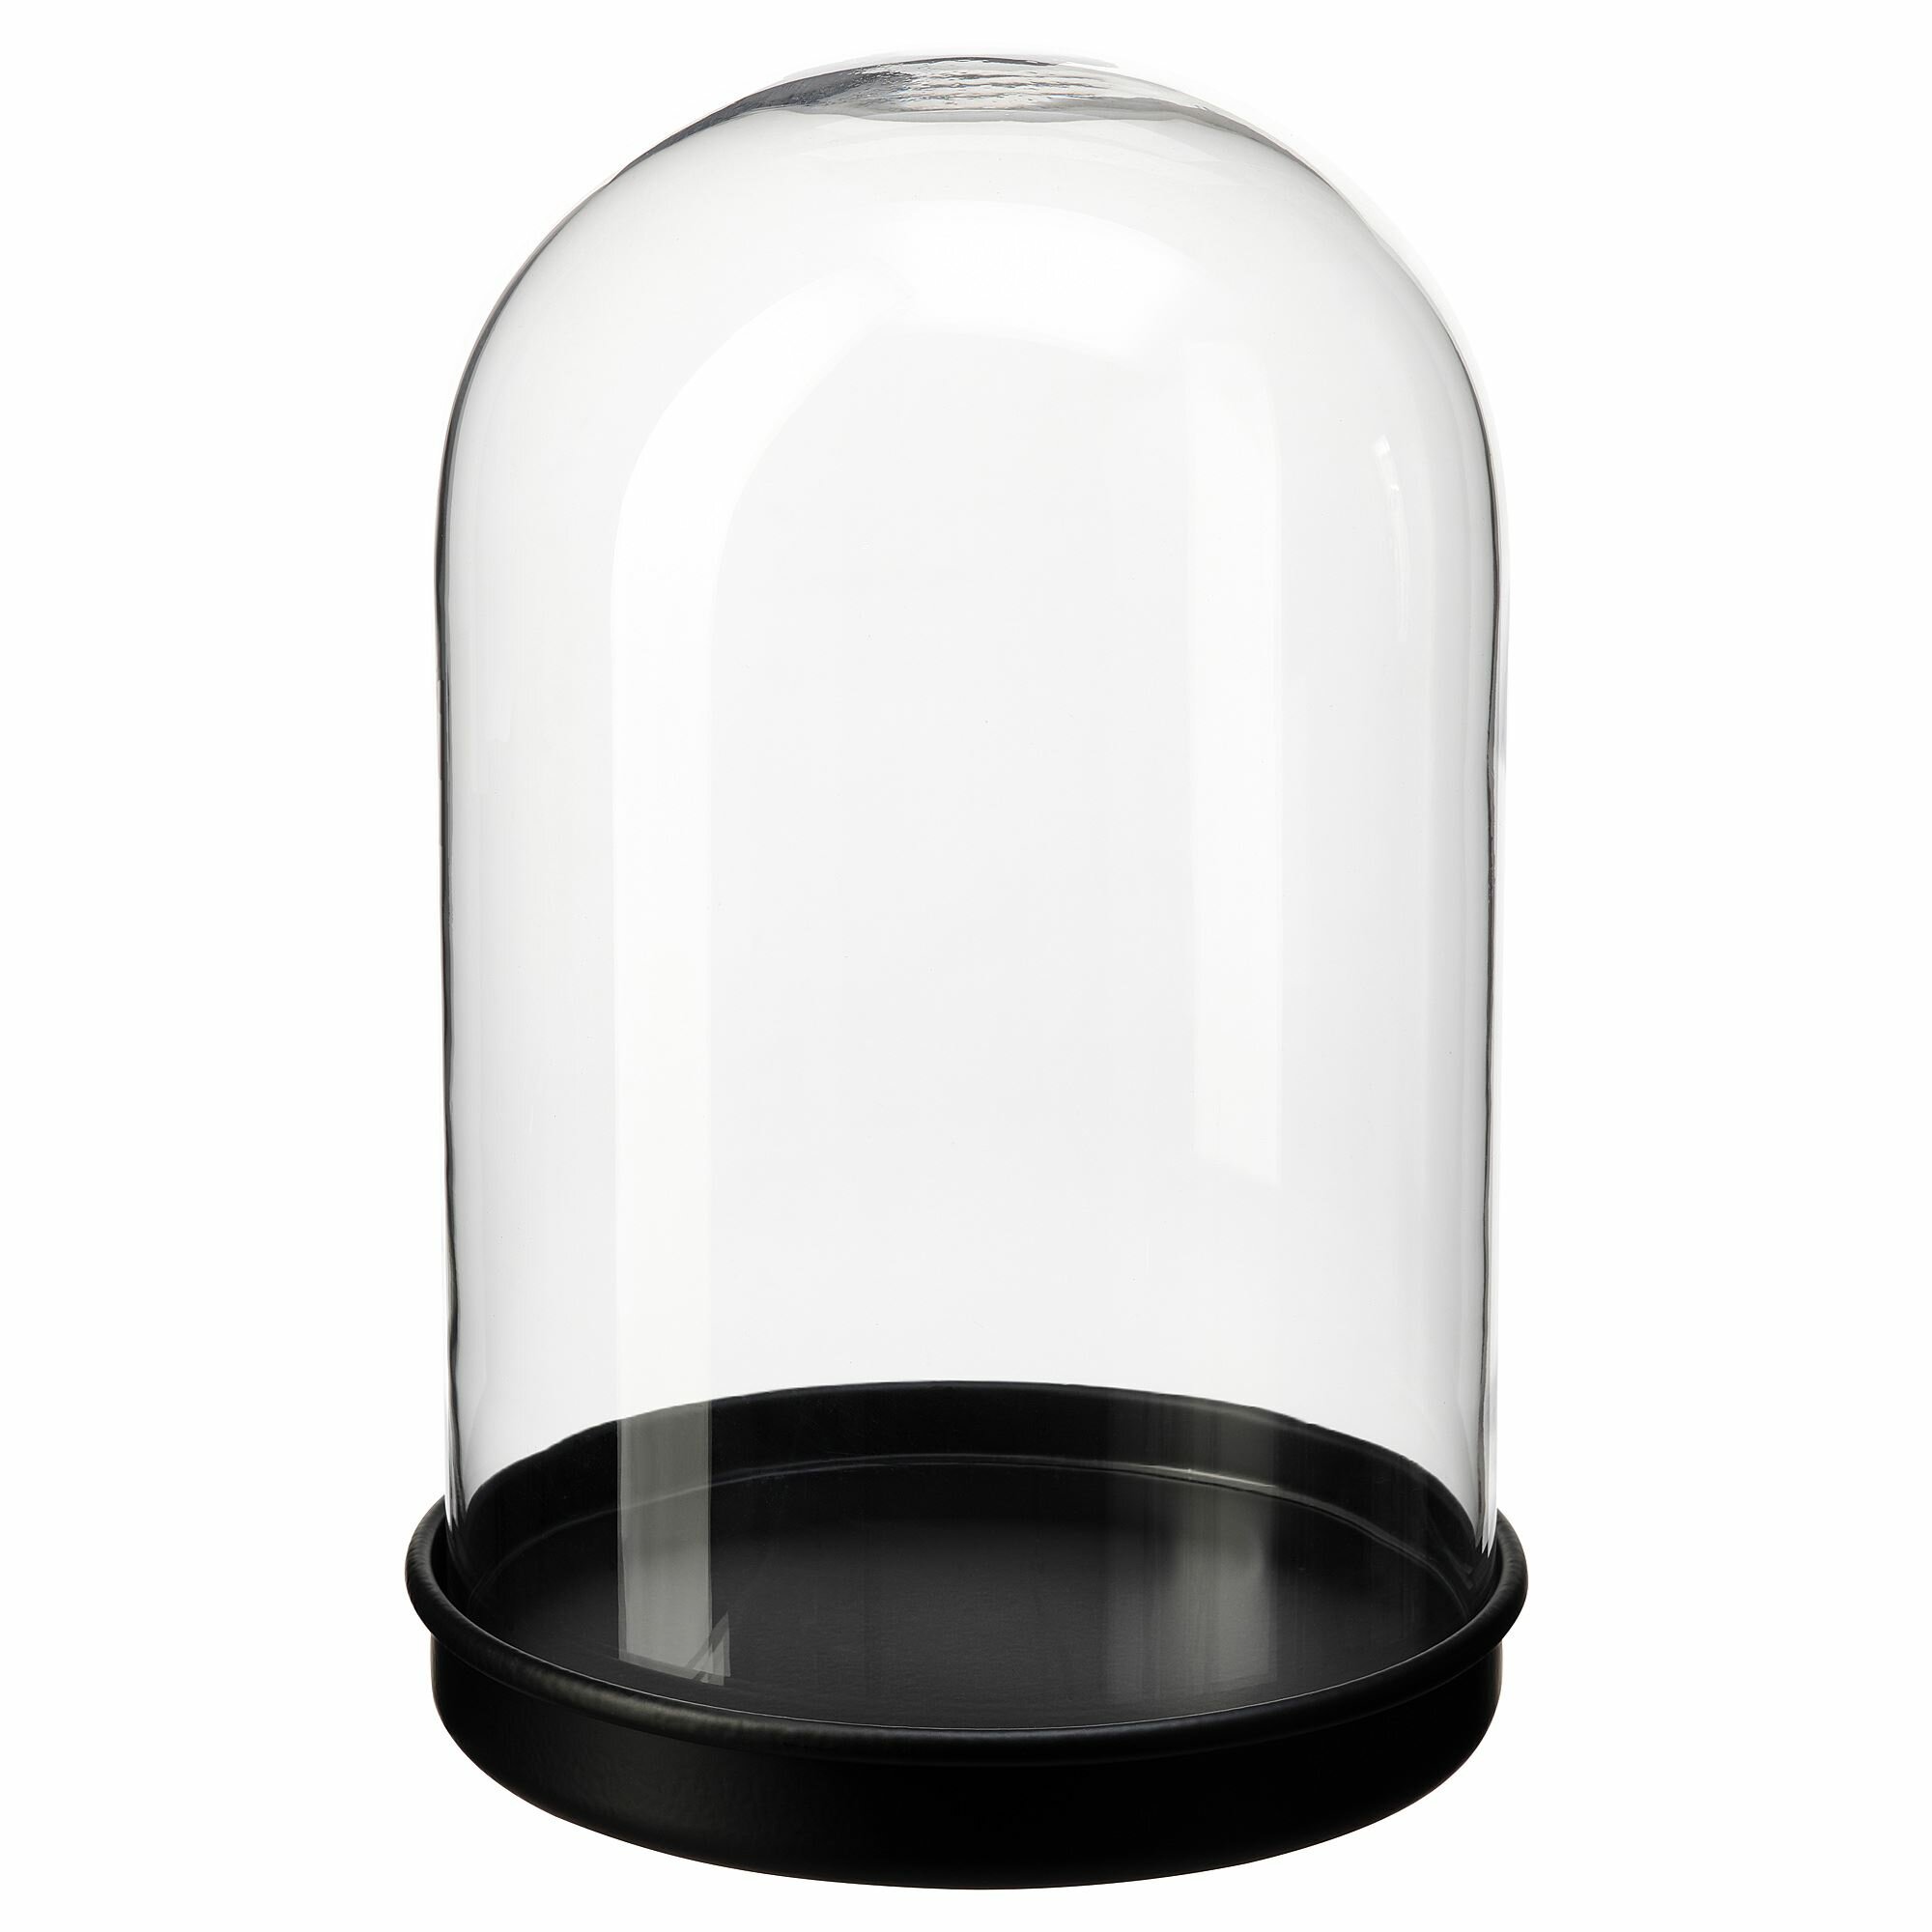 Икея / IKEA SKONJA, сконя, глобус стеклянный с подставкой, черный, 21 см